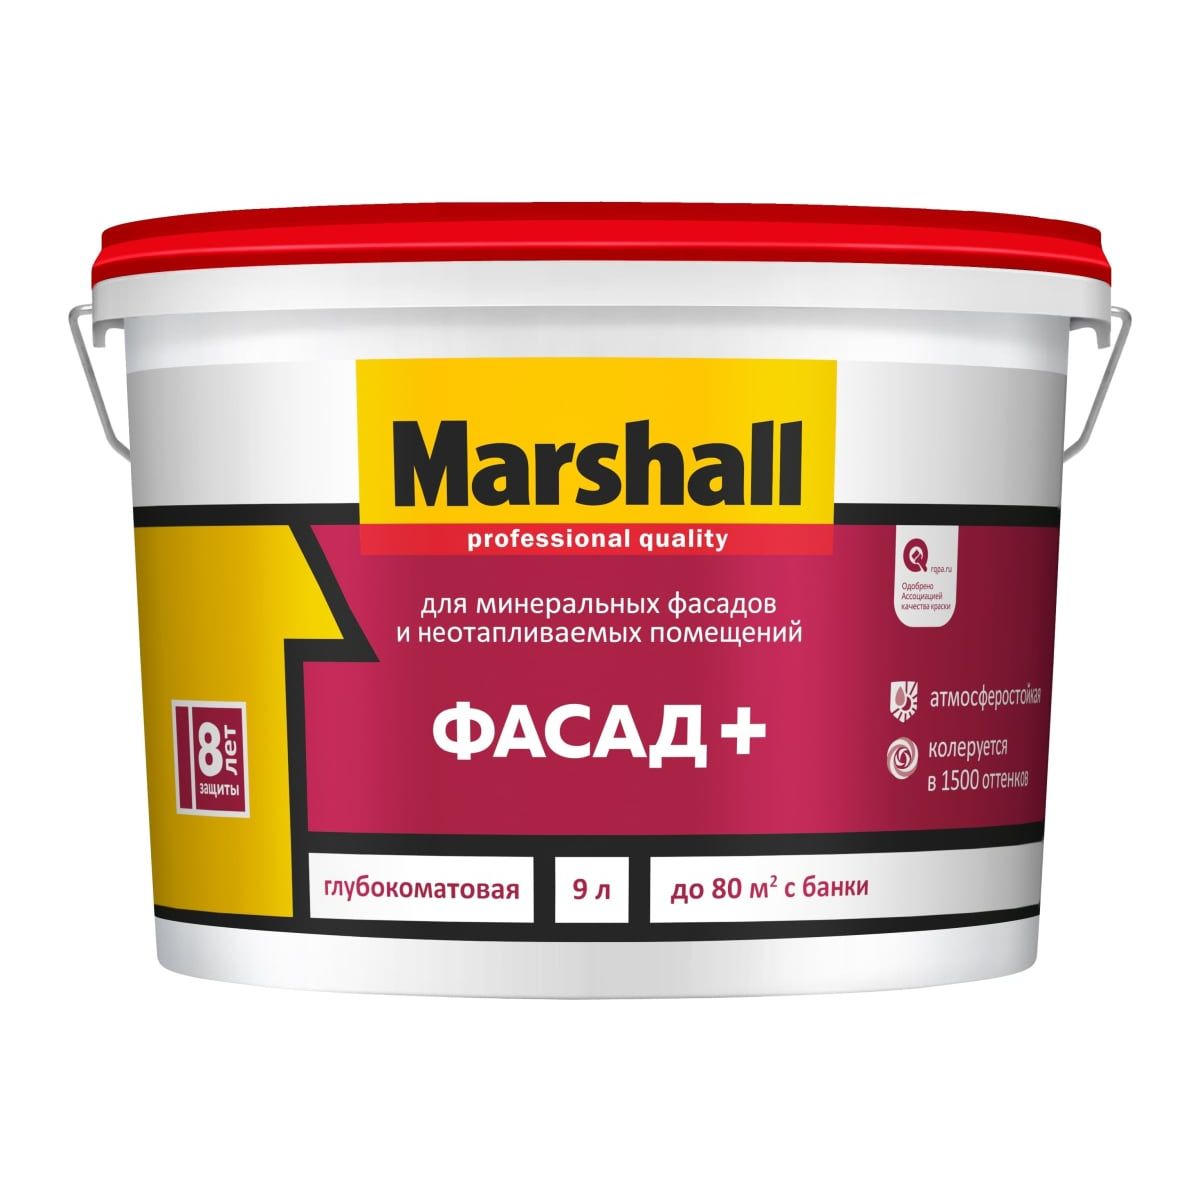 краска marshall фасад глубокоматовая база bc 9 л Краска Marshall Фасад+, глубокоматовая, база BC, 9 л